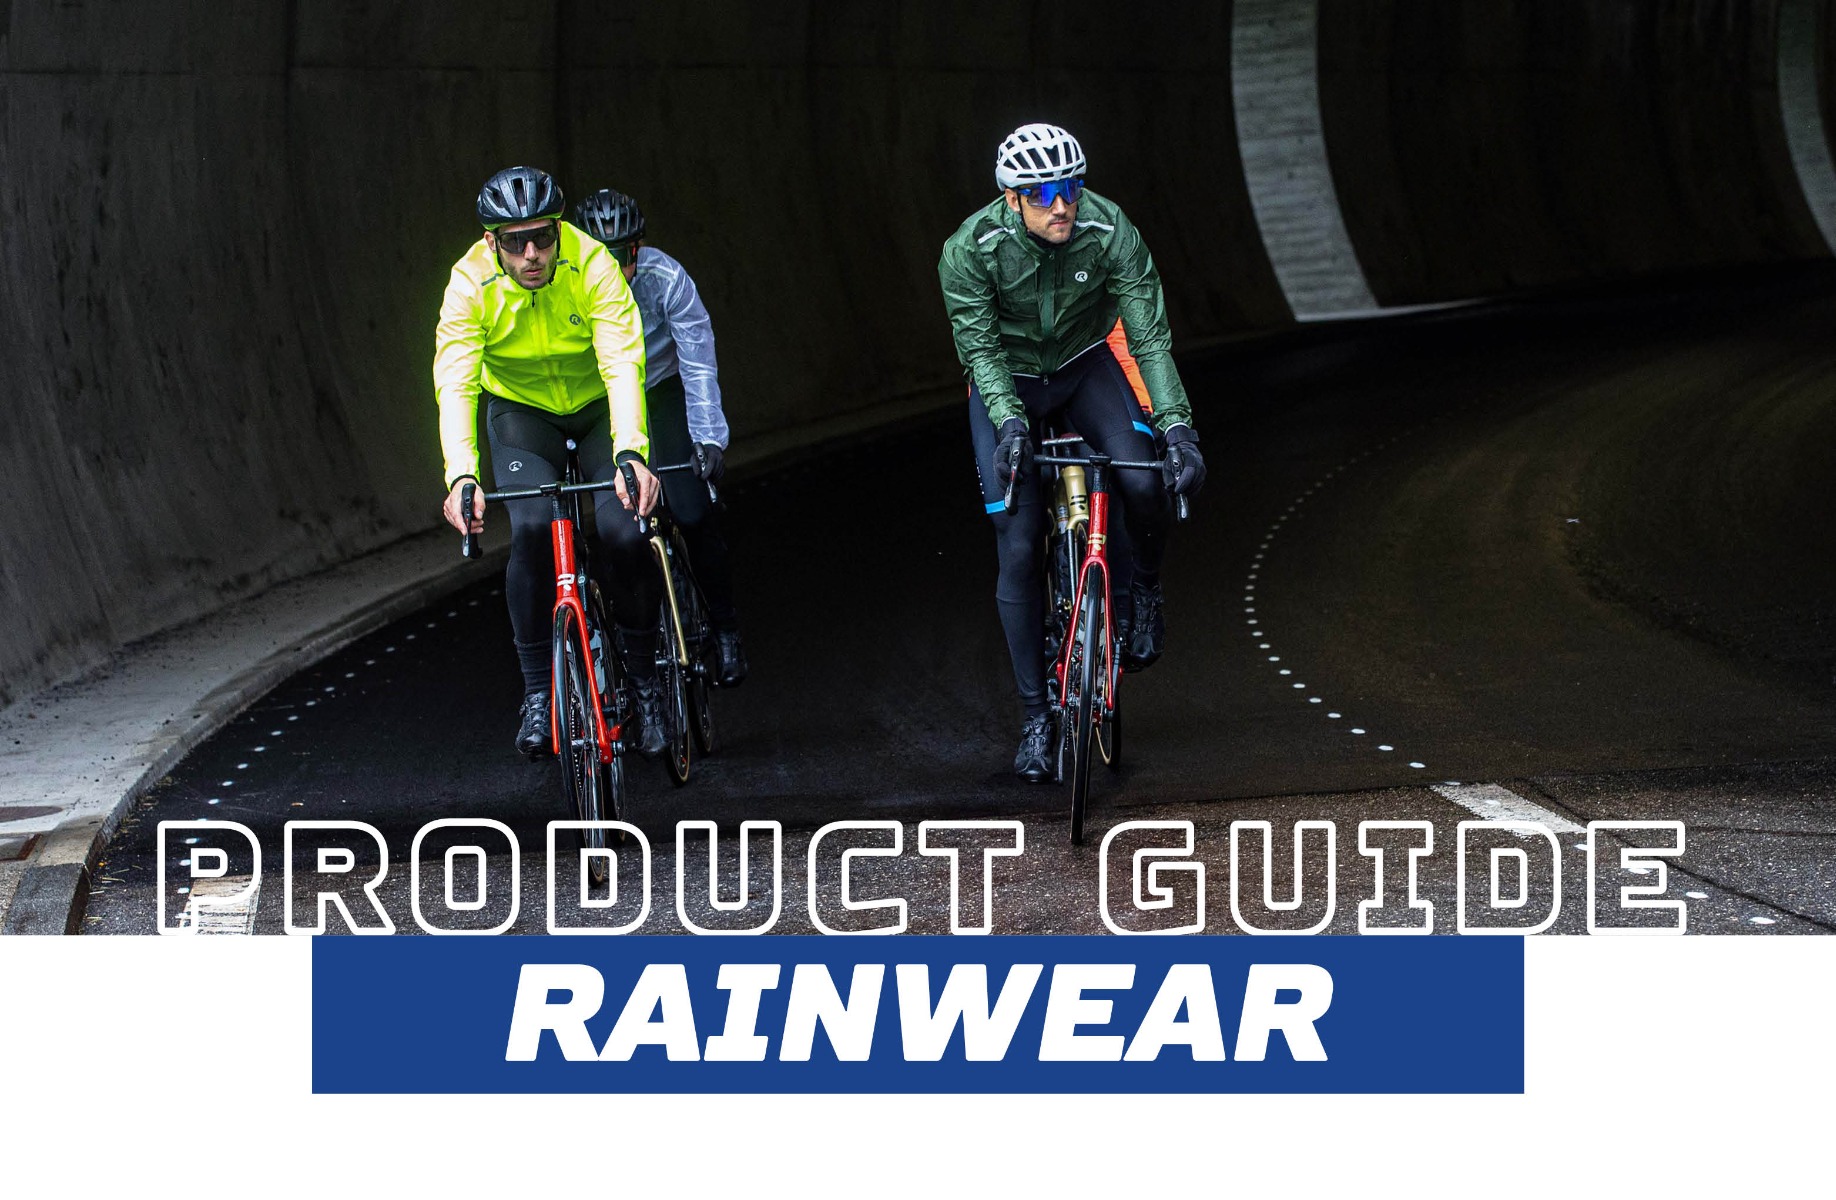 Wielrenners, zowel heren als dames, fietsen comfortabel in de regen met Rogelli regenjacks en blijven droog